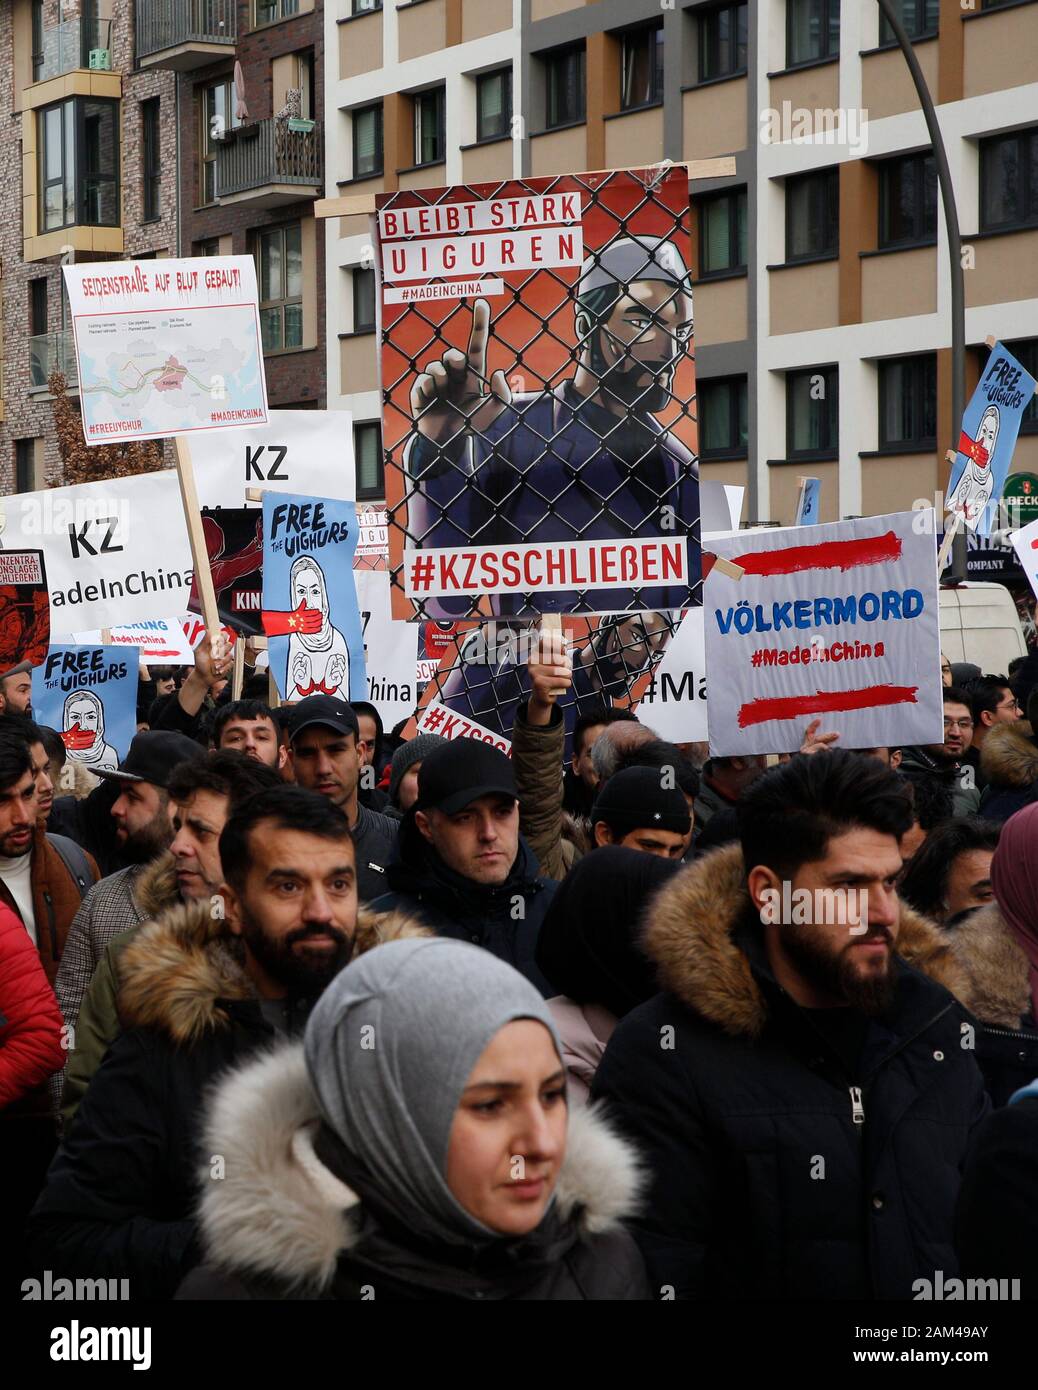 Amburgo, Germania. Xi gen, 2020. Persone manifestano contro l'oppressione del Uighur minoranza musulmana in Cina. Su uno dei manifesti, l'immagine di un musulmano dietro la maglia di filo con sollevati indice legge 'Stay forte uiguri', al di sotto di esso '#KZschliessen'. L'Ufficio di Amburgo per la protezione della costituzione aveva dichiarato che il rally è stato organizzato da islamici. Dietro l'organizzatore "Generazione Islam" nasconde il bandito organizzazione Hizb ut-Tahrir (Partito della Liberazione). Credito: Markus Scholz/dpa/Alamy Live News Foto Stock